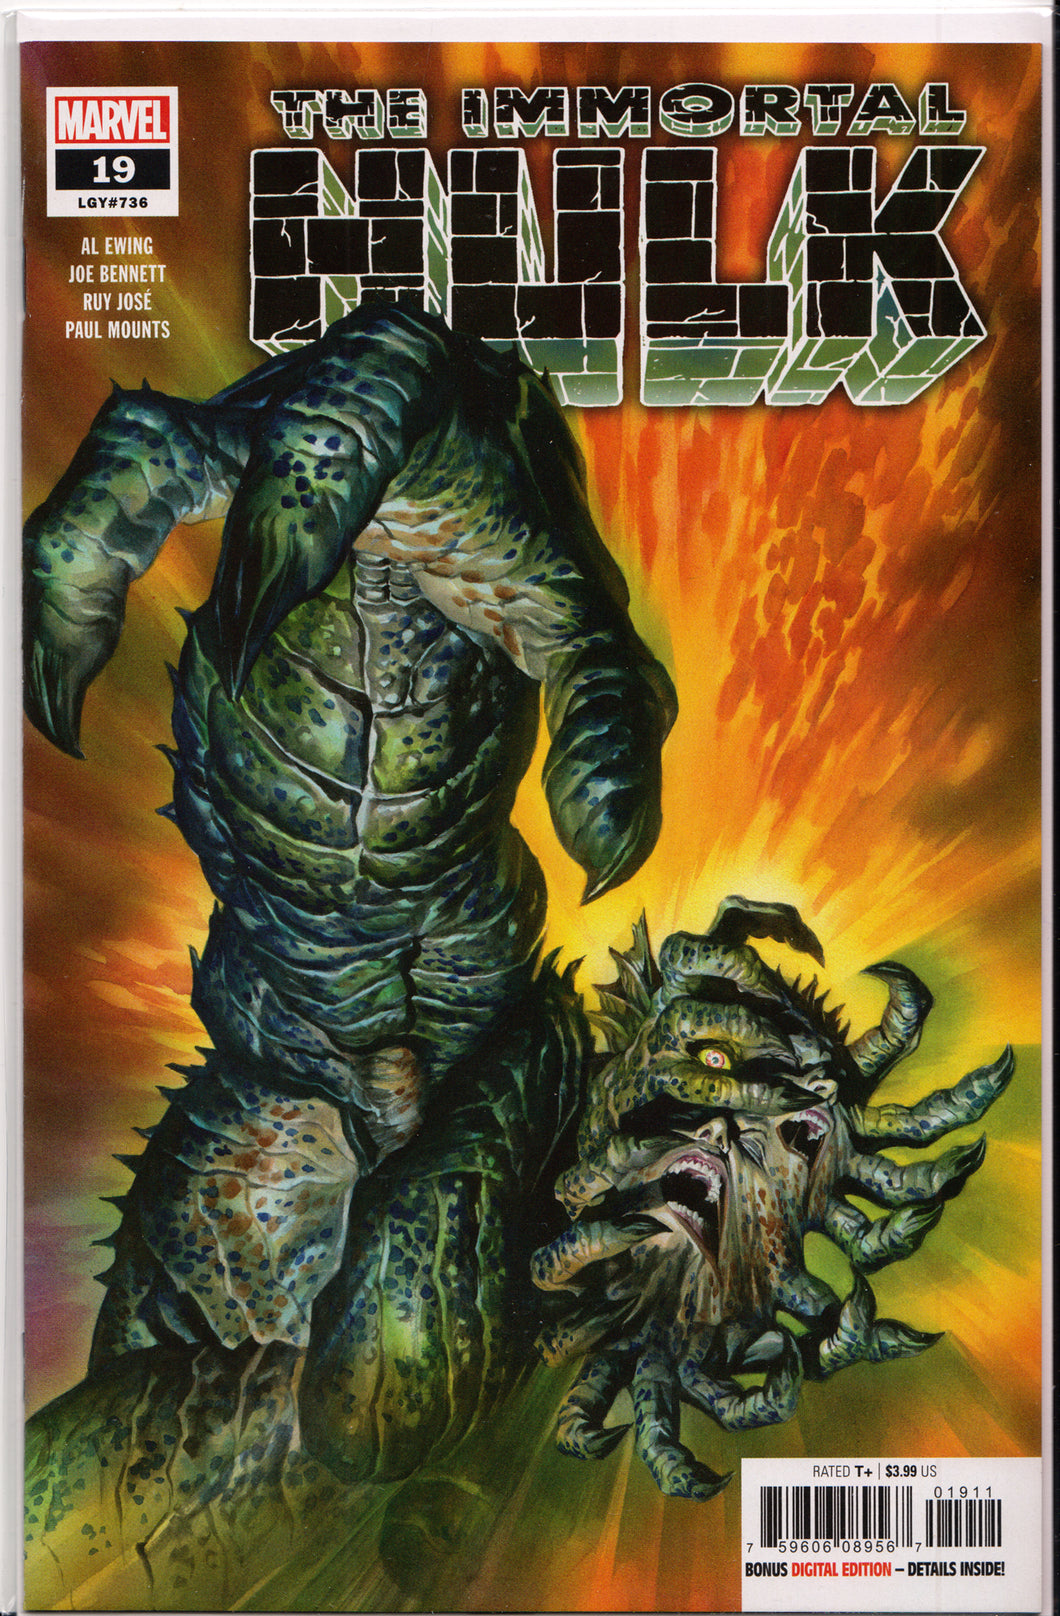 THE IMMORTAL HULK #19 (ALEX ROSS COVER) COMIC BOOK ~ Marvel Comics